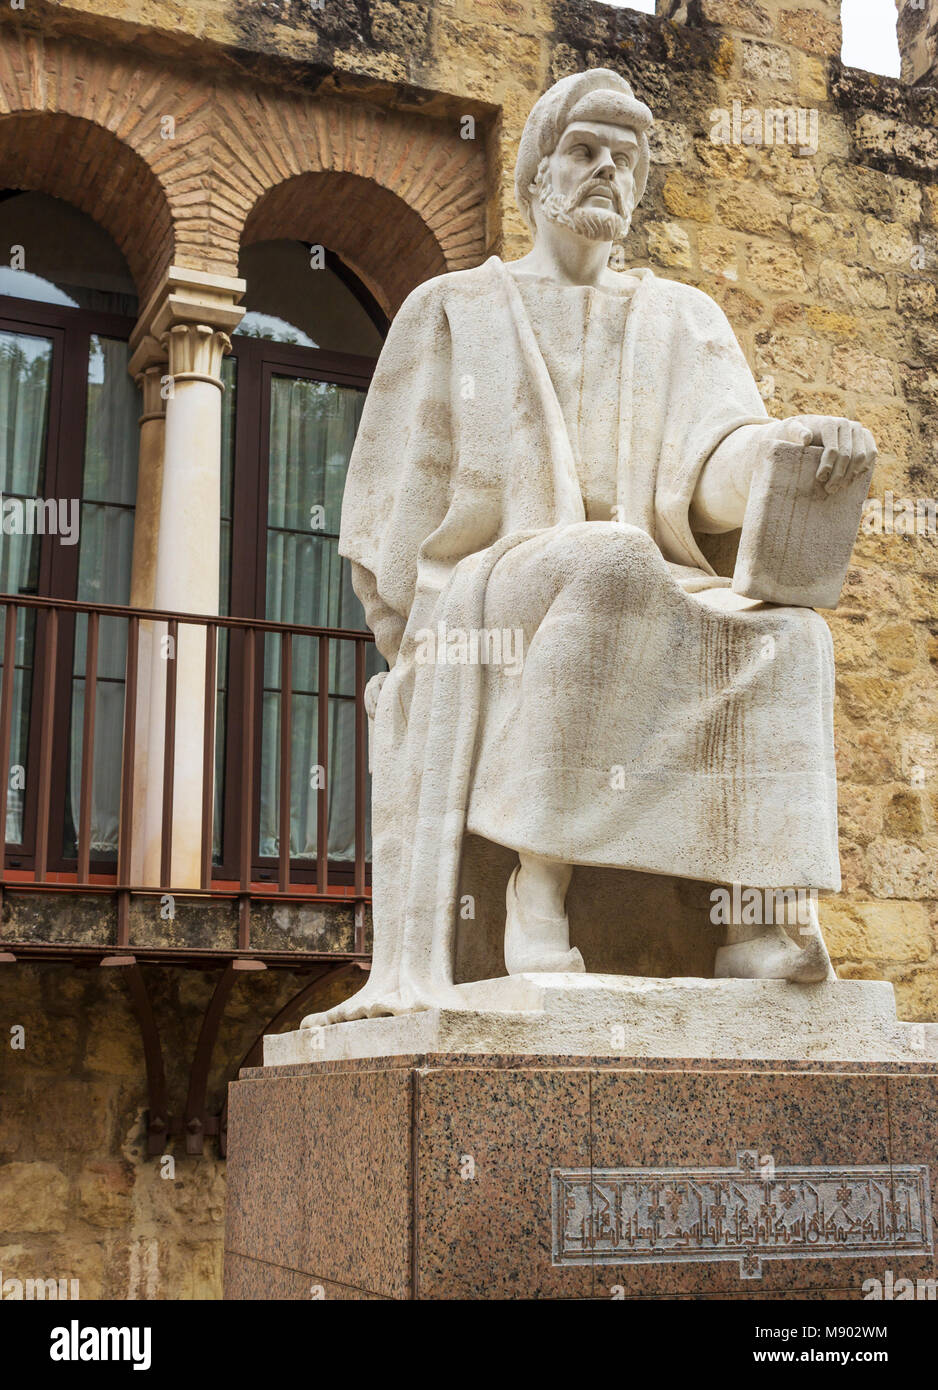 Cordoba, Spanien. Statue von Ibn Rushd, Al l-Walīd Ibn, ʾAḥmad Muḥammad Ibn Rushd, 1126 - 1198, auch bekannt als Averroes. Mittelalterliche andalusischen Arabischen Universalgelehrten. Stockfoto